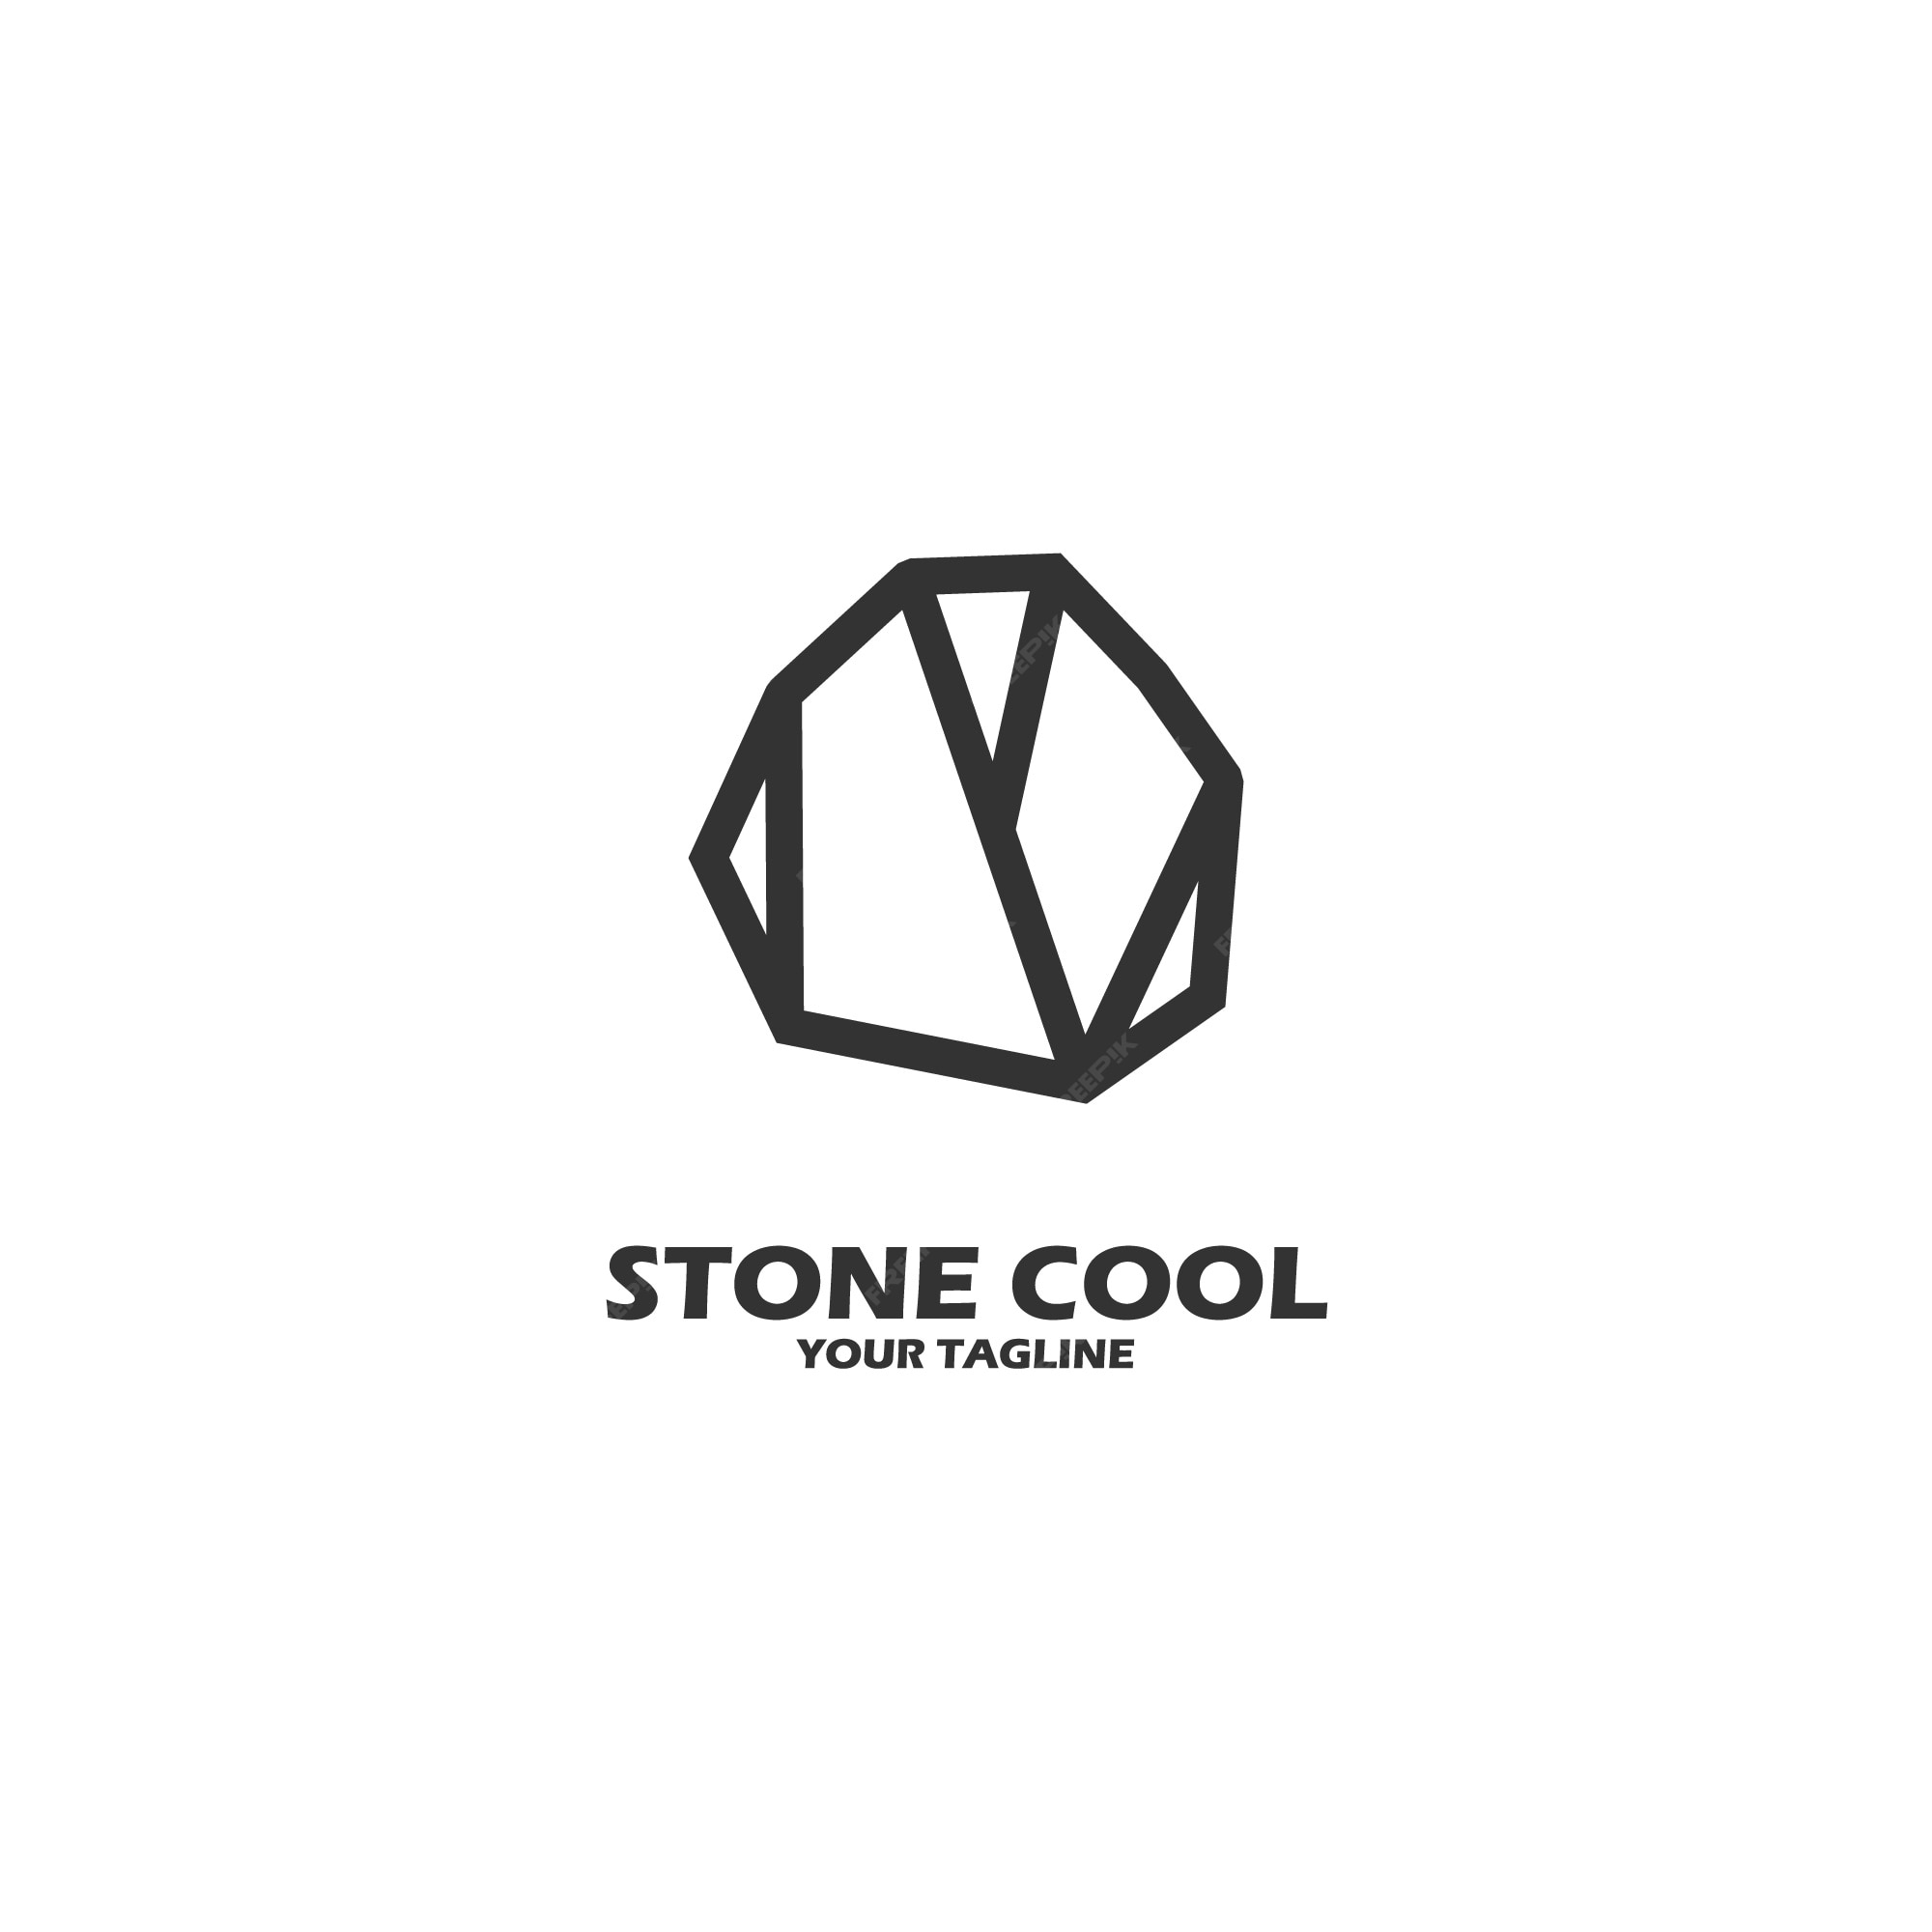 Логотип stone. Камень лого. Логотип из камня. Искусственный камень логотип.